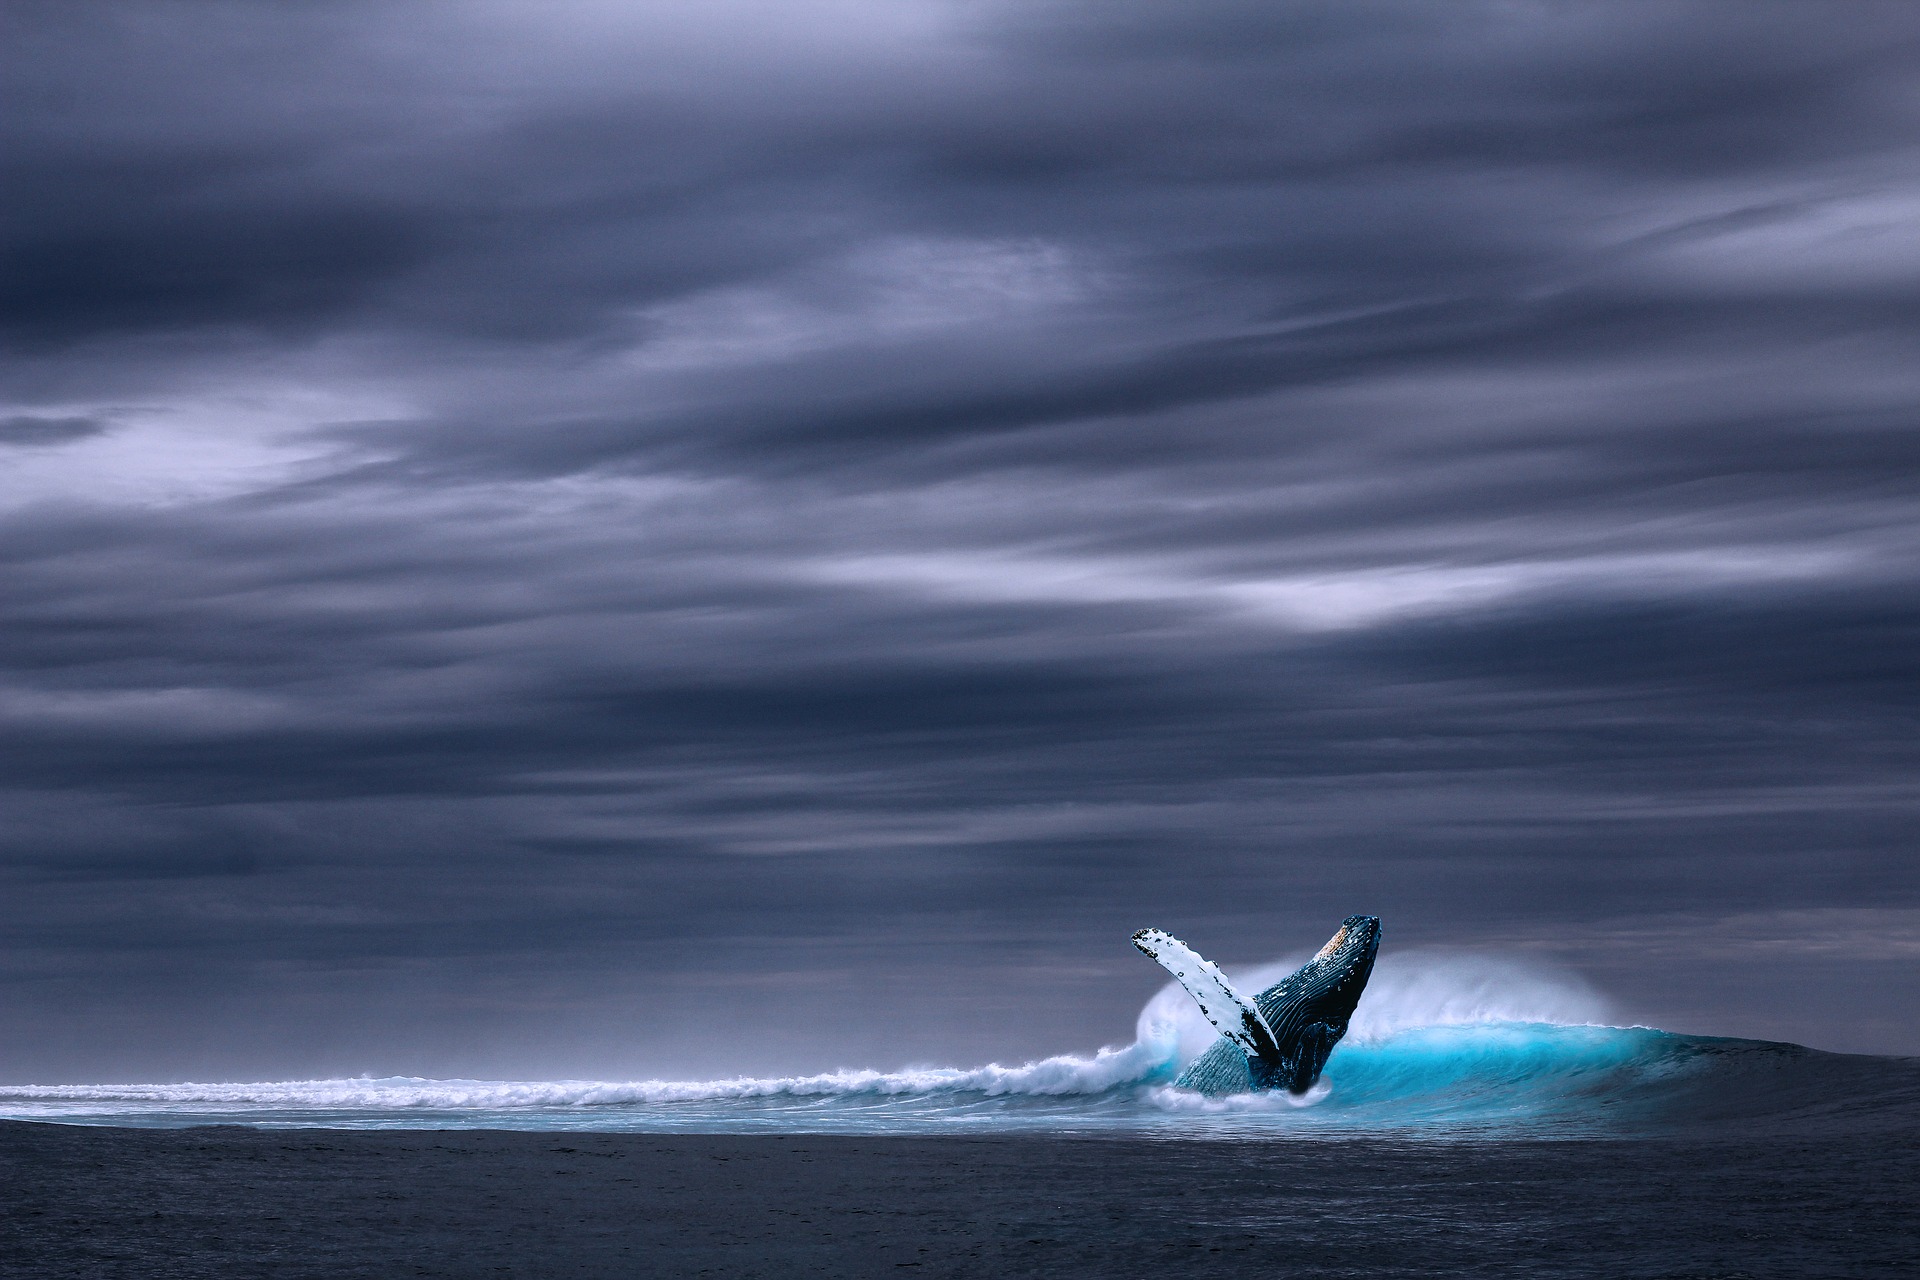 Ein Wal wirft sich mit dem Rücken nach vorne ins Wasser, der Himmel ist dunkel und bewölkt